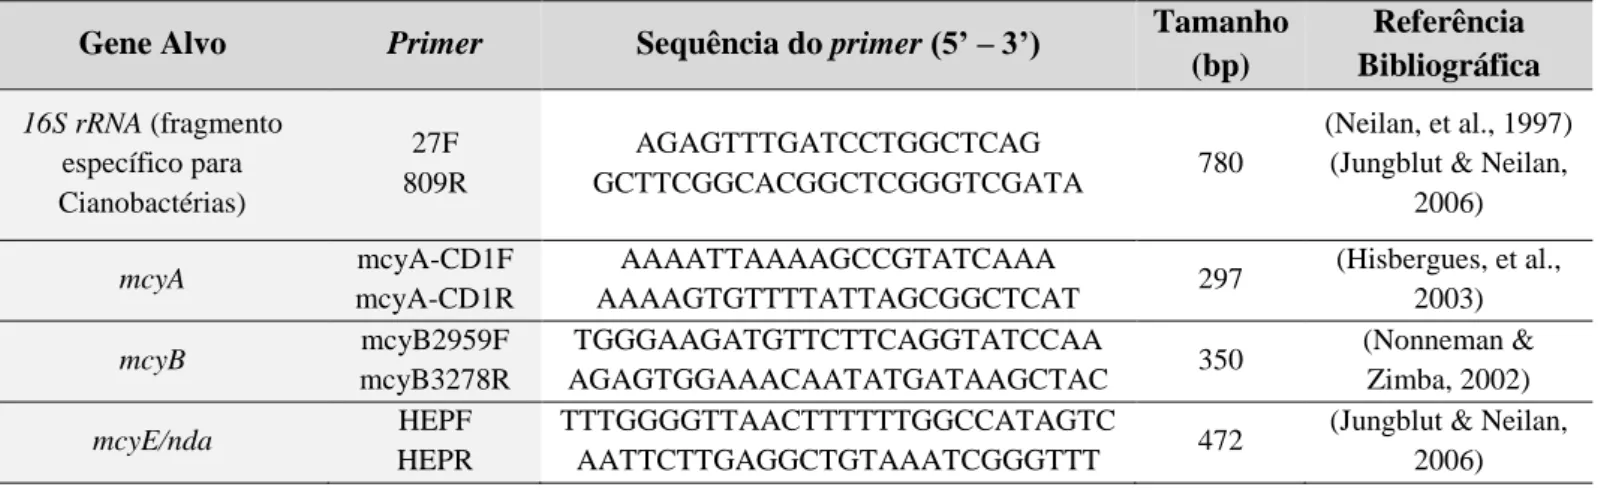 Tabela 4 - Informação dos Primers que foram utilizados na amplificação de cada um dos genes alvo 